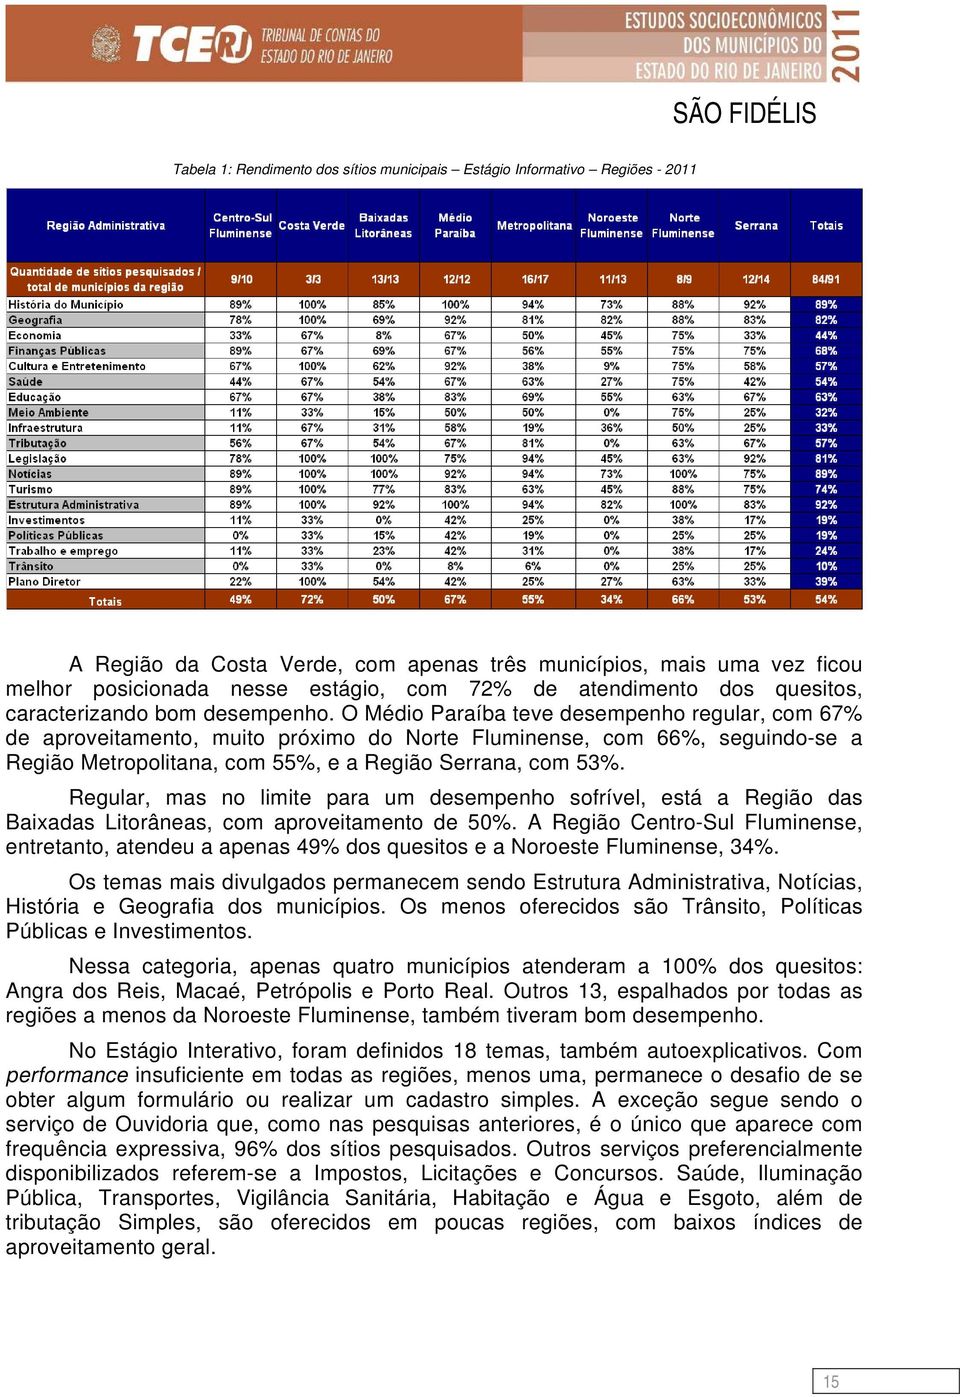 O Médio Paraíba teve desempenho regular, com 67% de aproveitamento, muito próximo do Norte Fluminense, com 66%, seguindo-se a Região Metropolitana, com 55%, e a Região Serrana, com 53%.